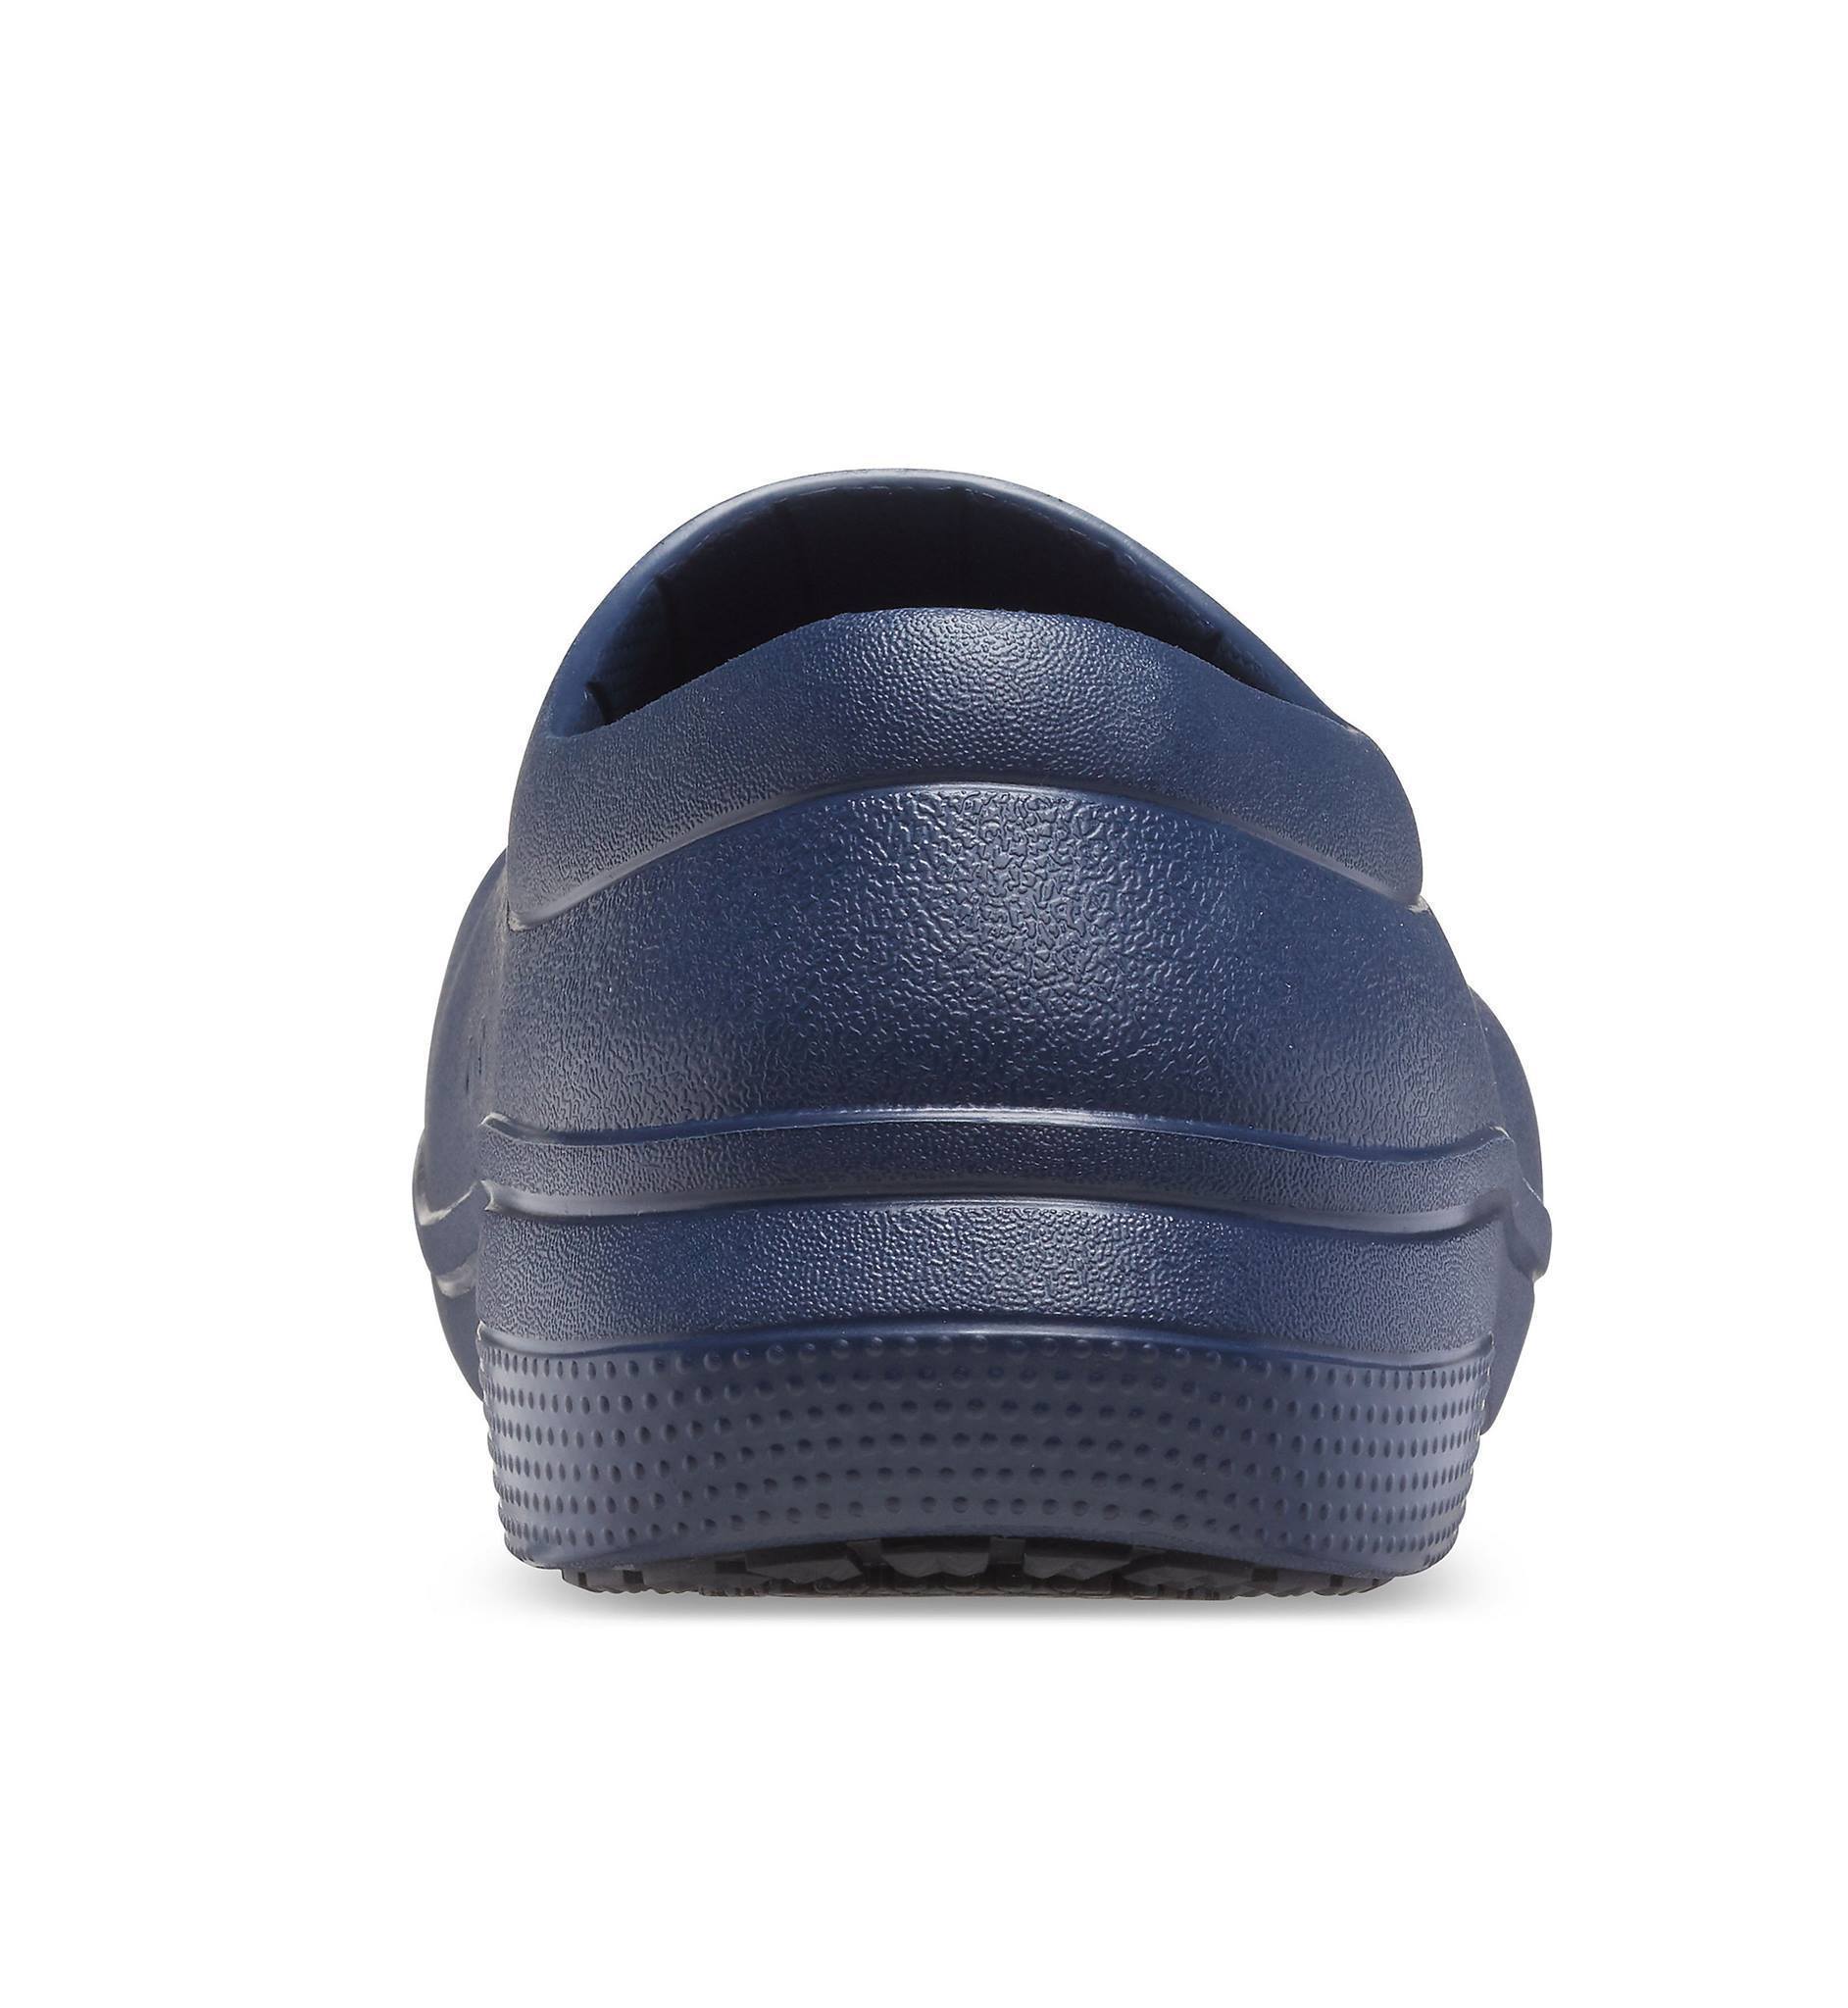 Giày Cr()cs slip resistant dành cho Nam. Mẫu dép tiện dụng, bền bỉ và đa năng. Chống trơn trợt, bền miễn bàn